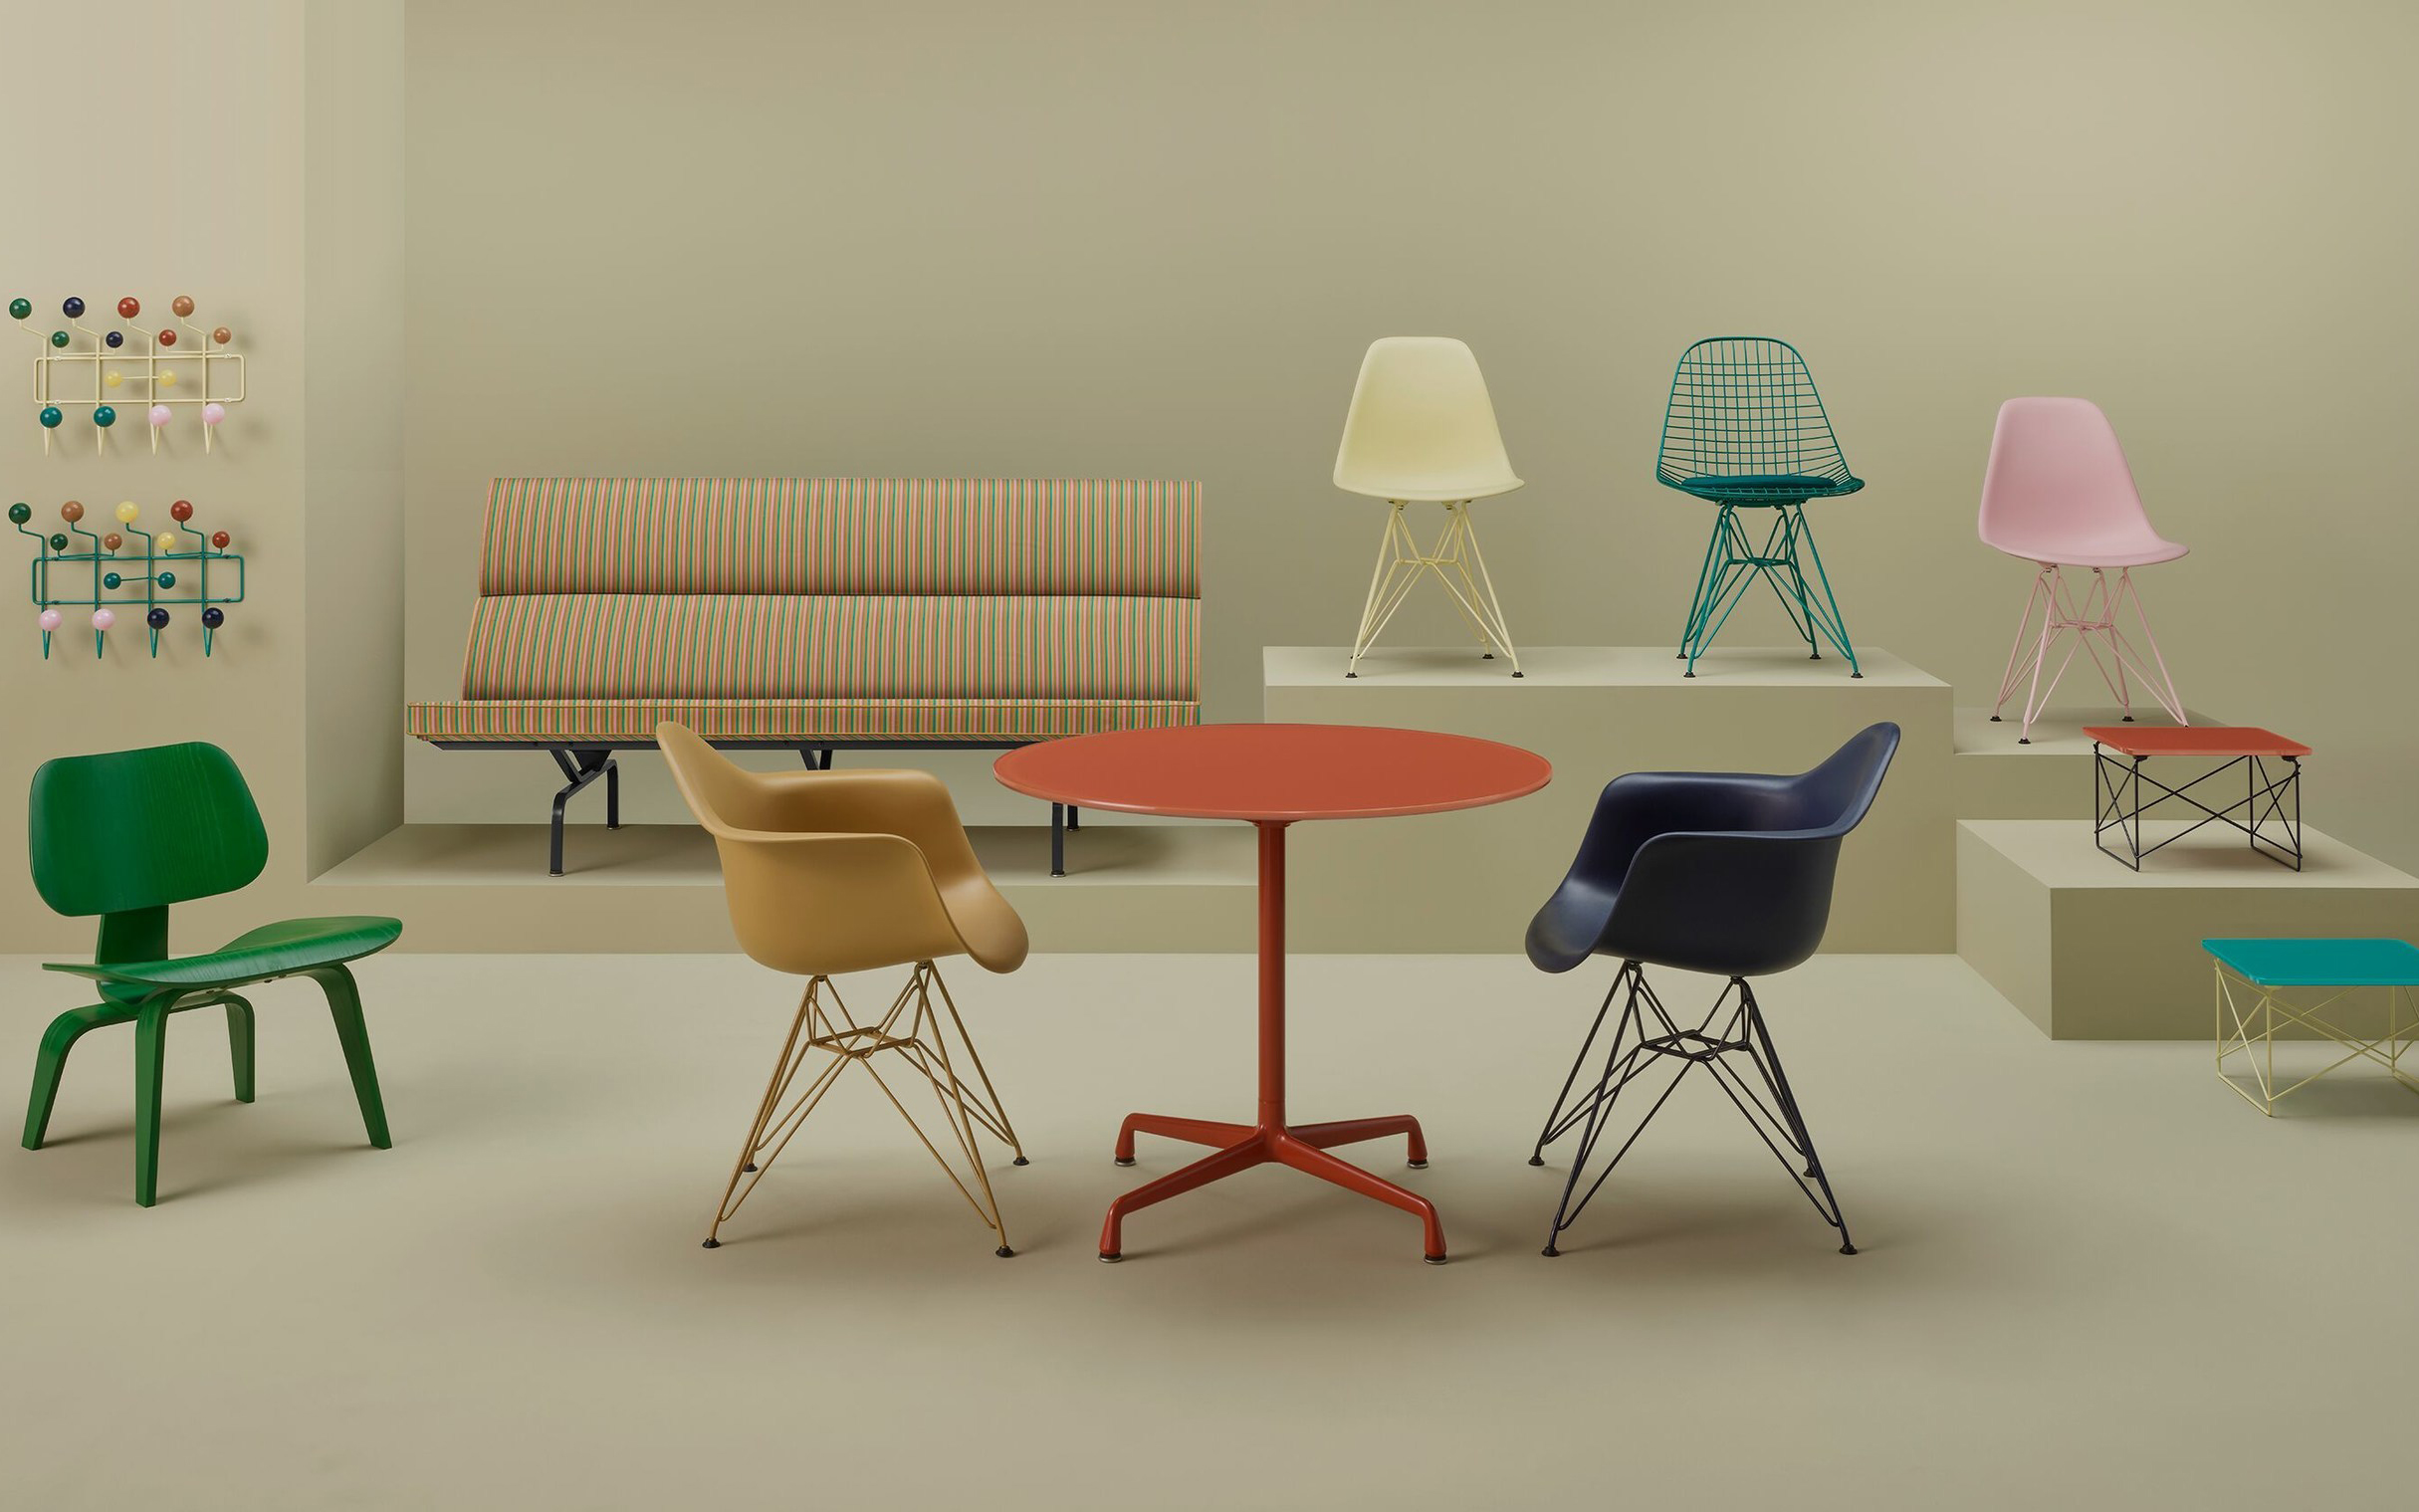 美国家居品牌 Herman Miller 和丹麦家居品牌 HAY 推出联名系列，致敬 Eames 经典设计